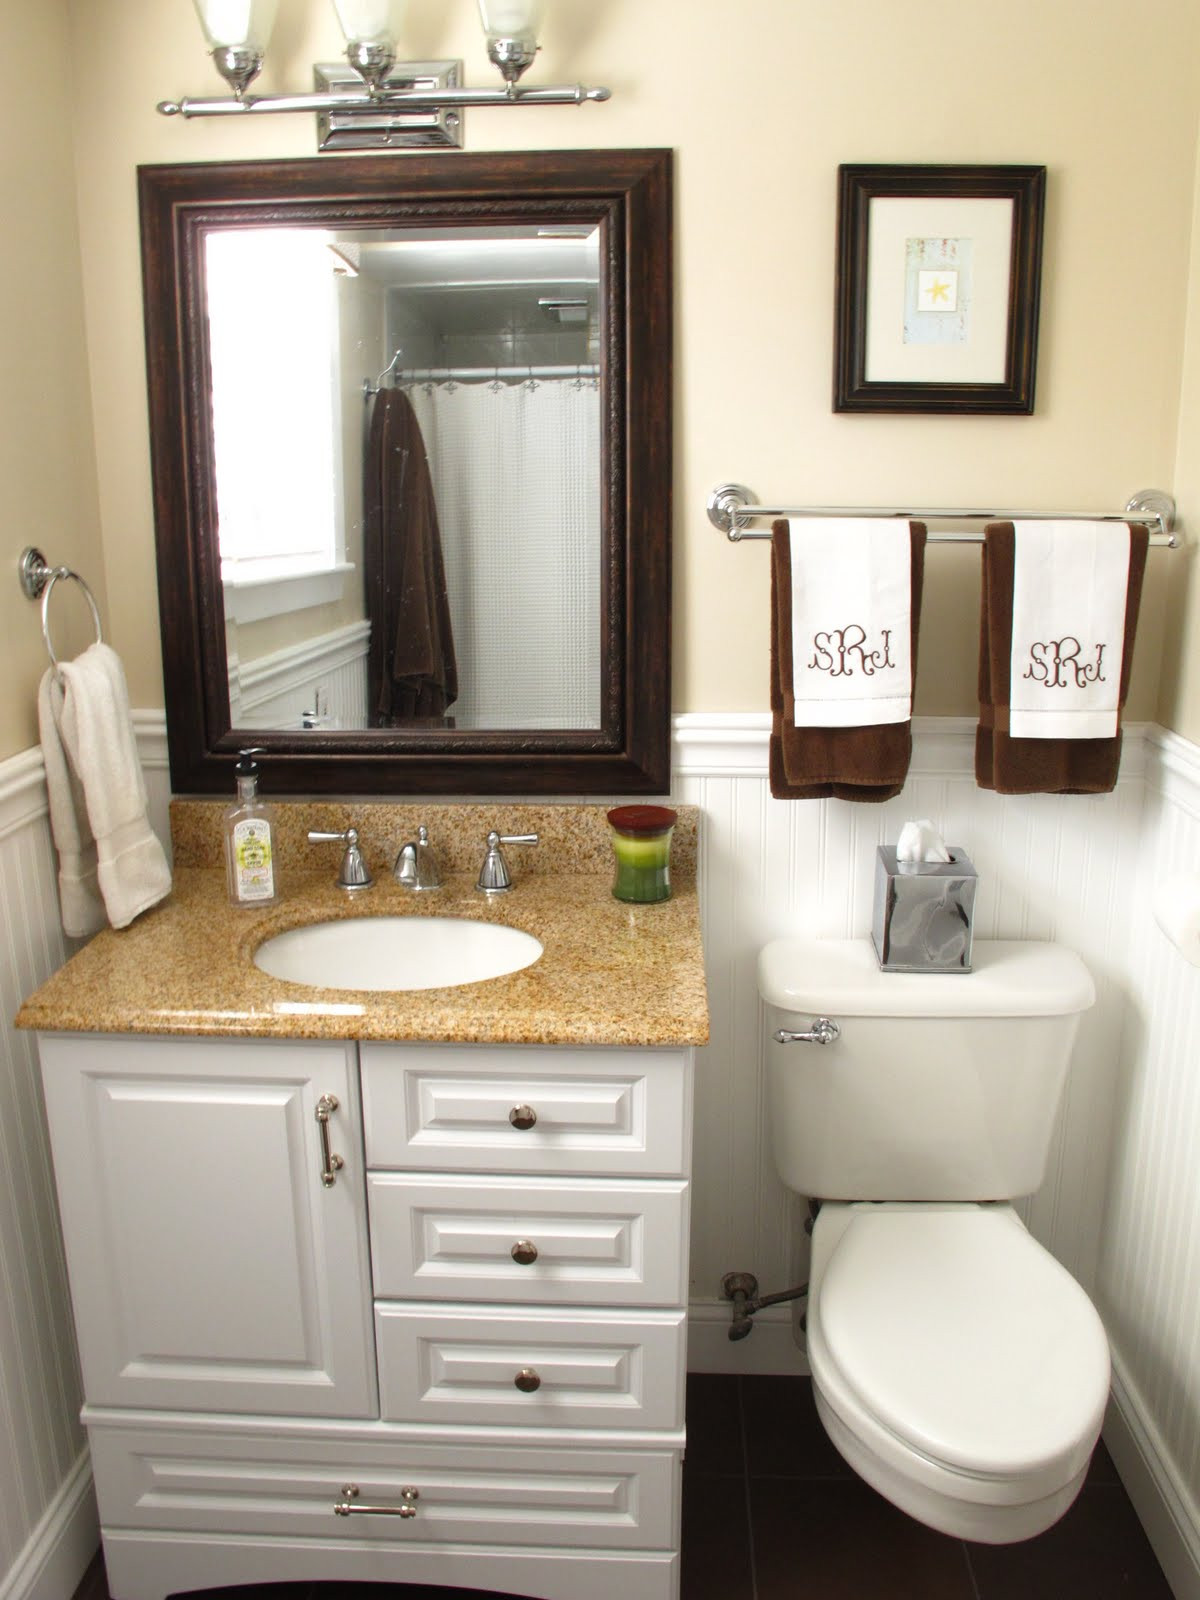 Sink Bathroom Home Depot
 Best Home Depot Bathroom Vanities Usa